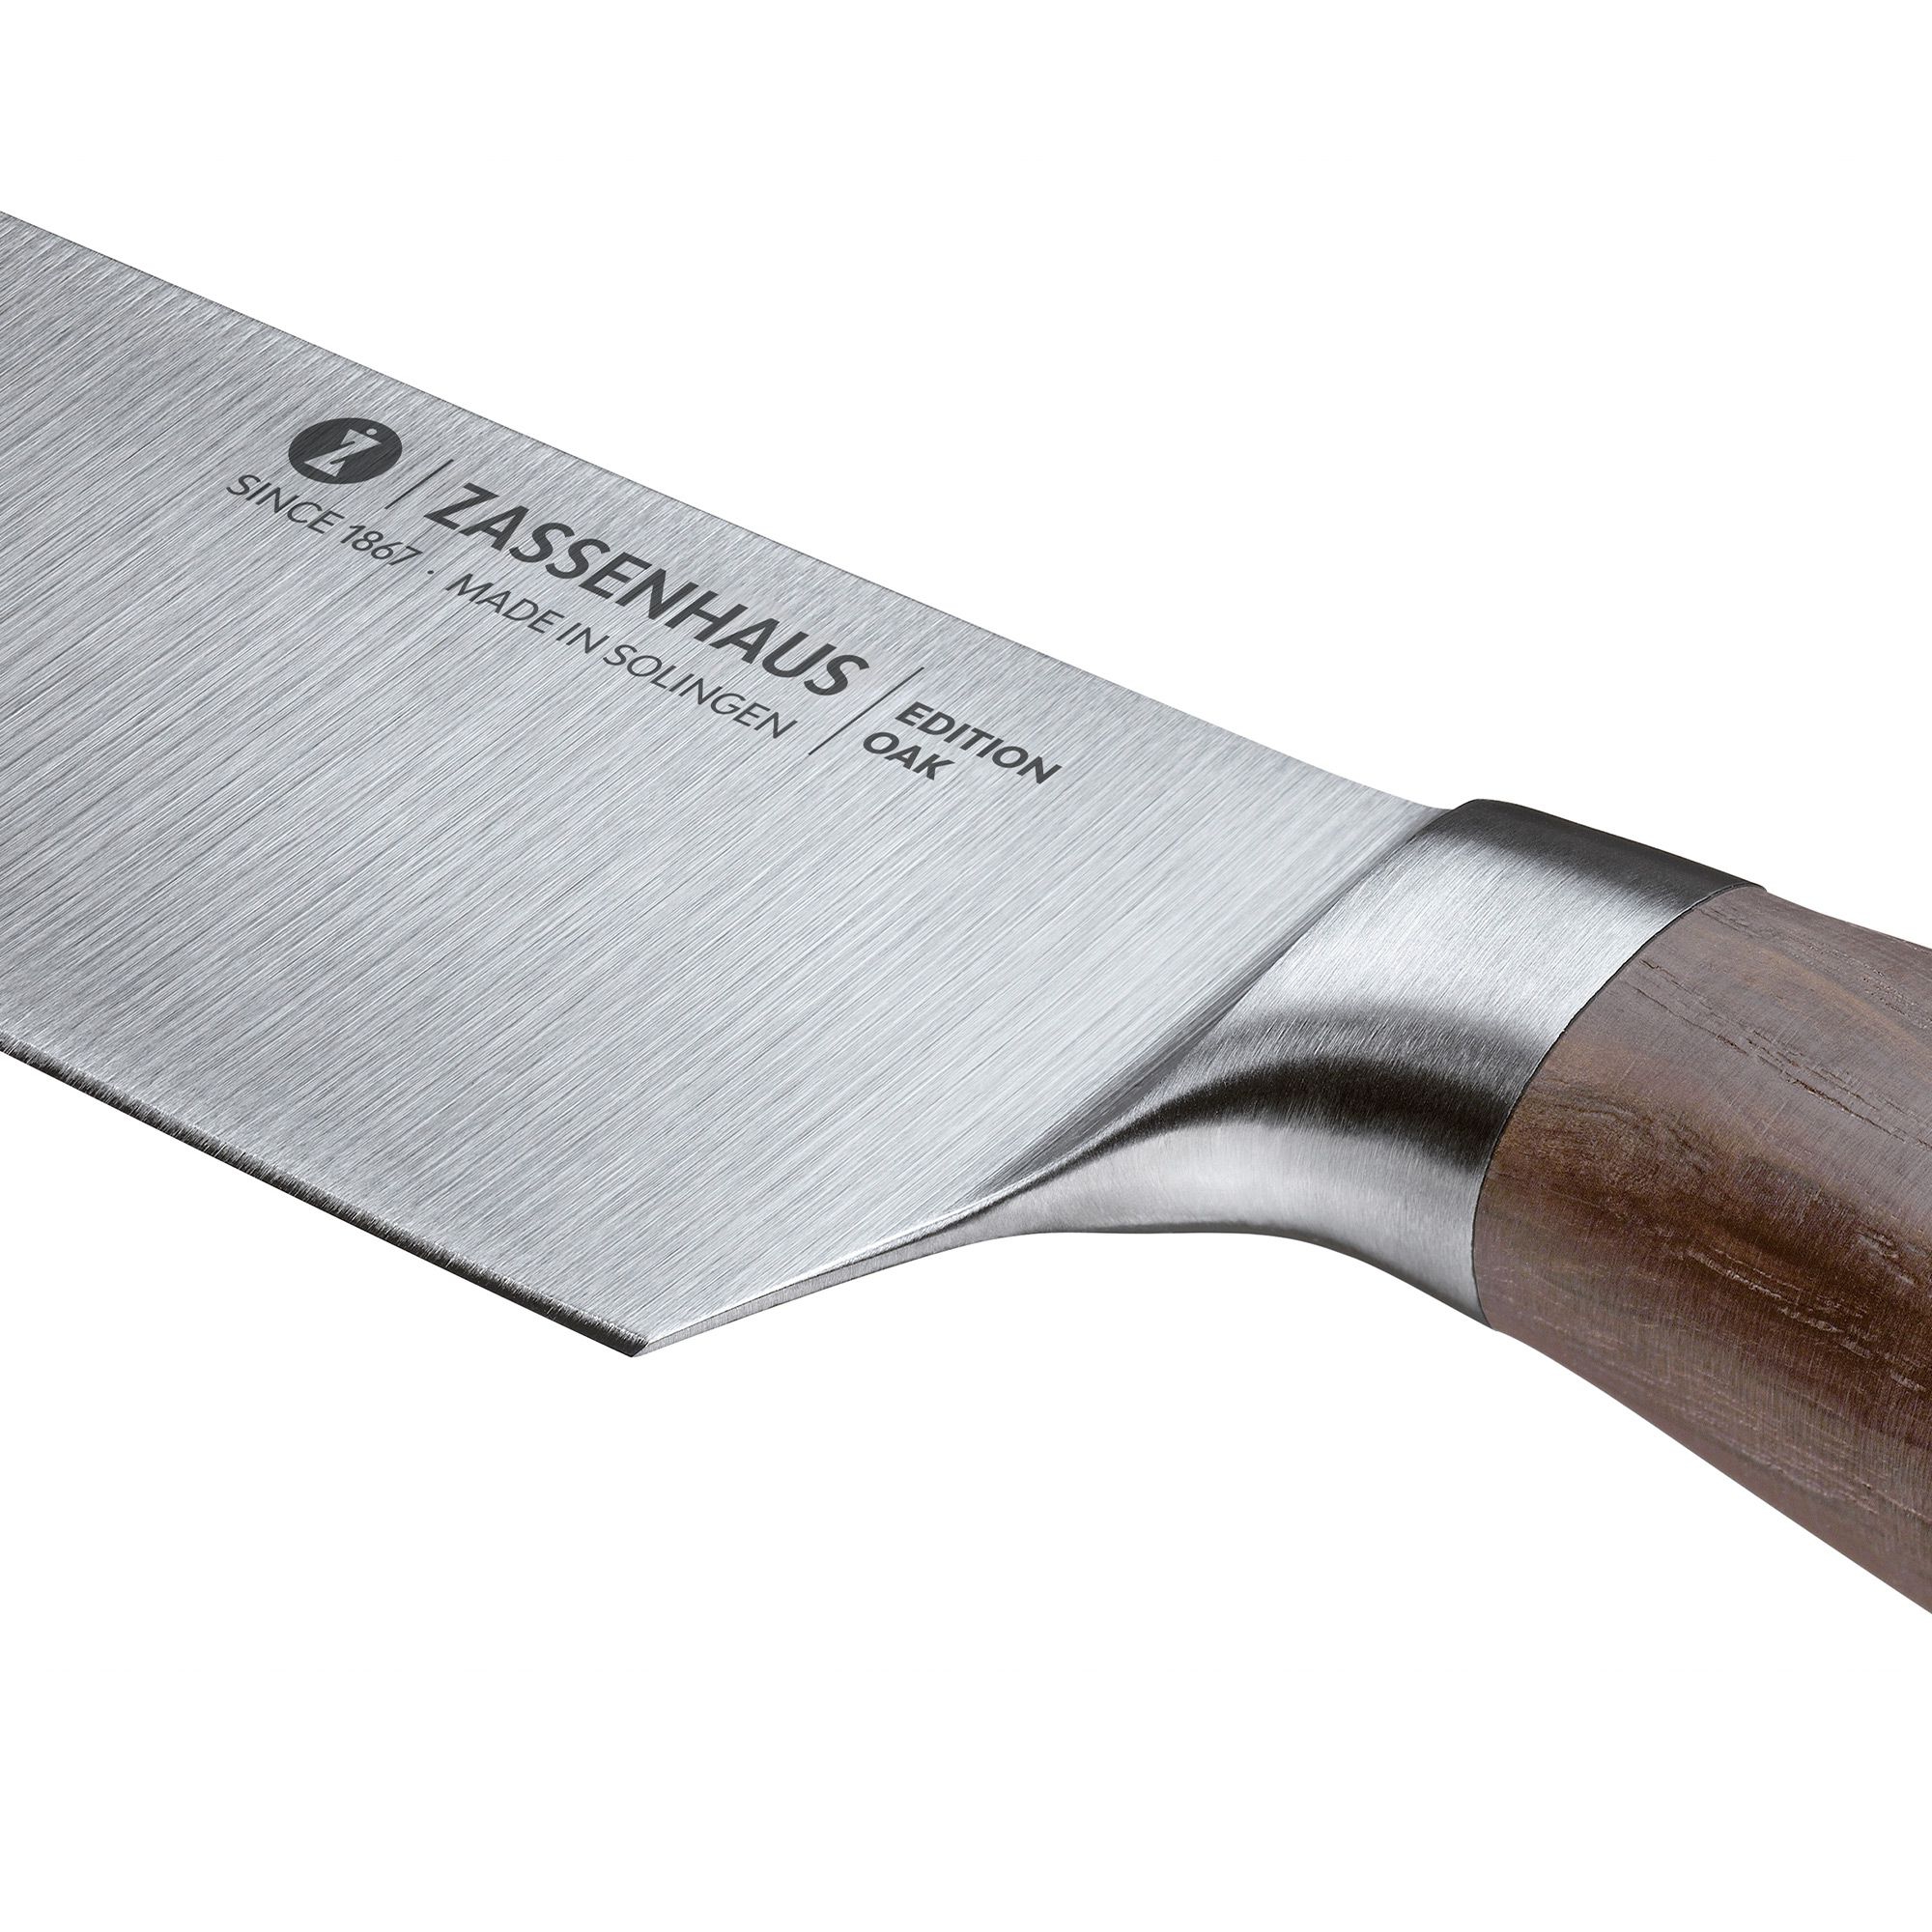 Zassenhaus - cooking knife 21cm  - EDITION OAK